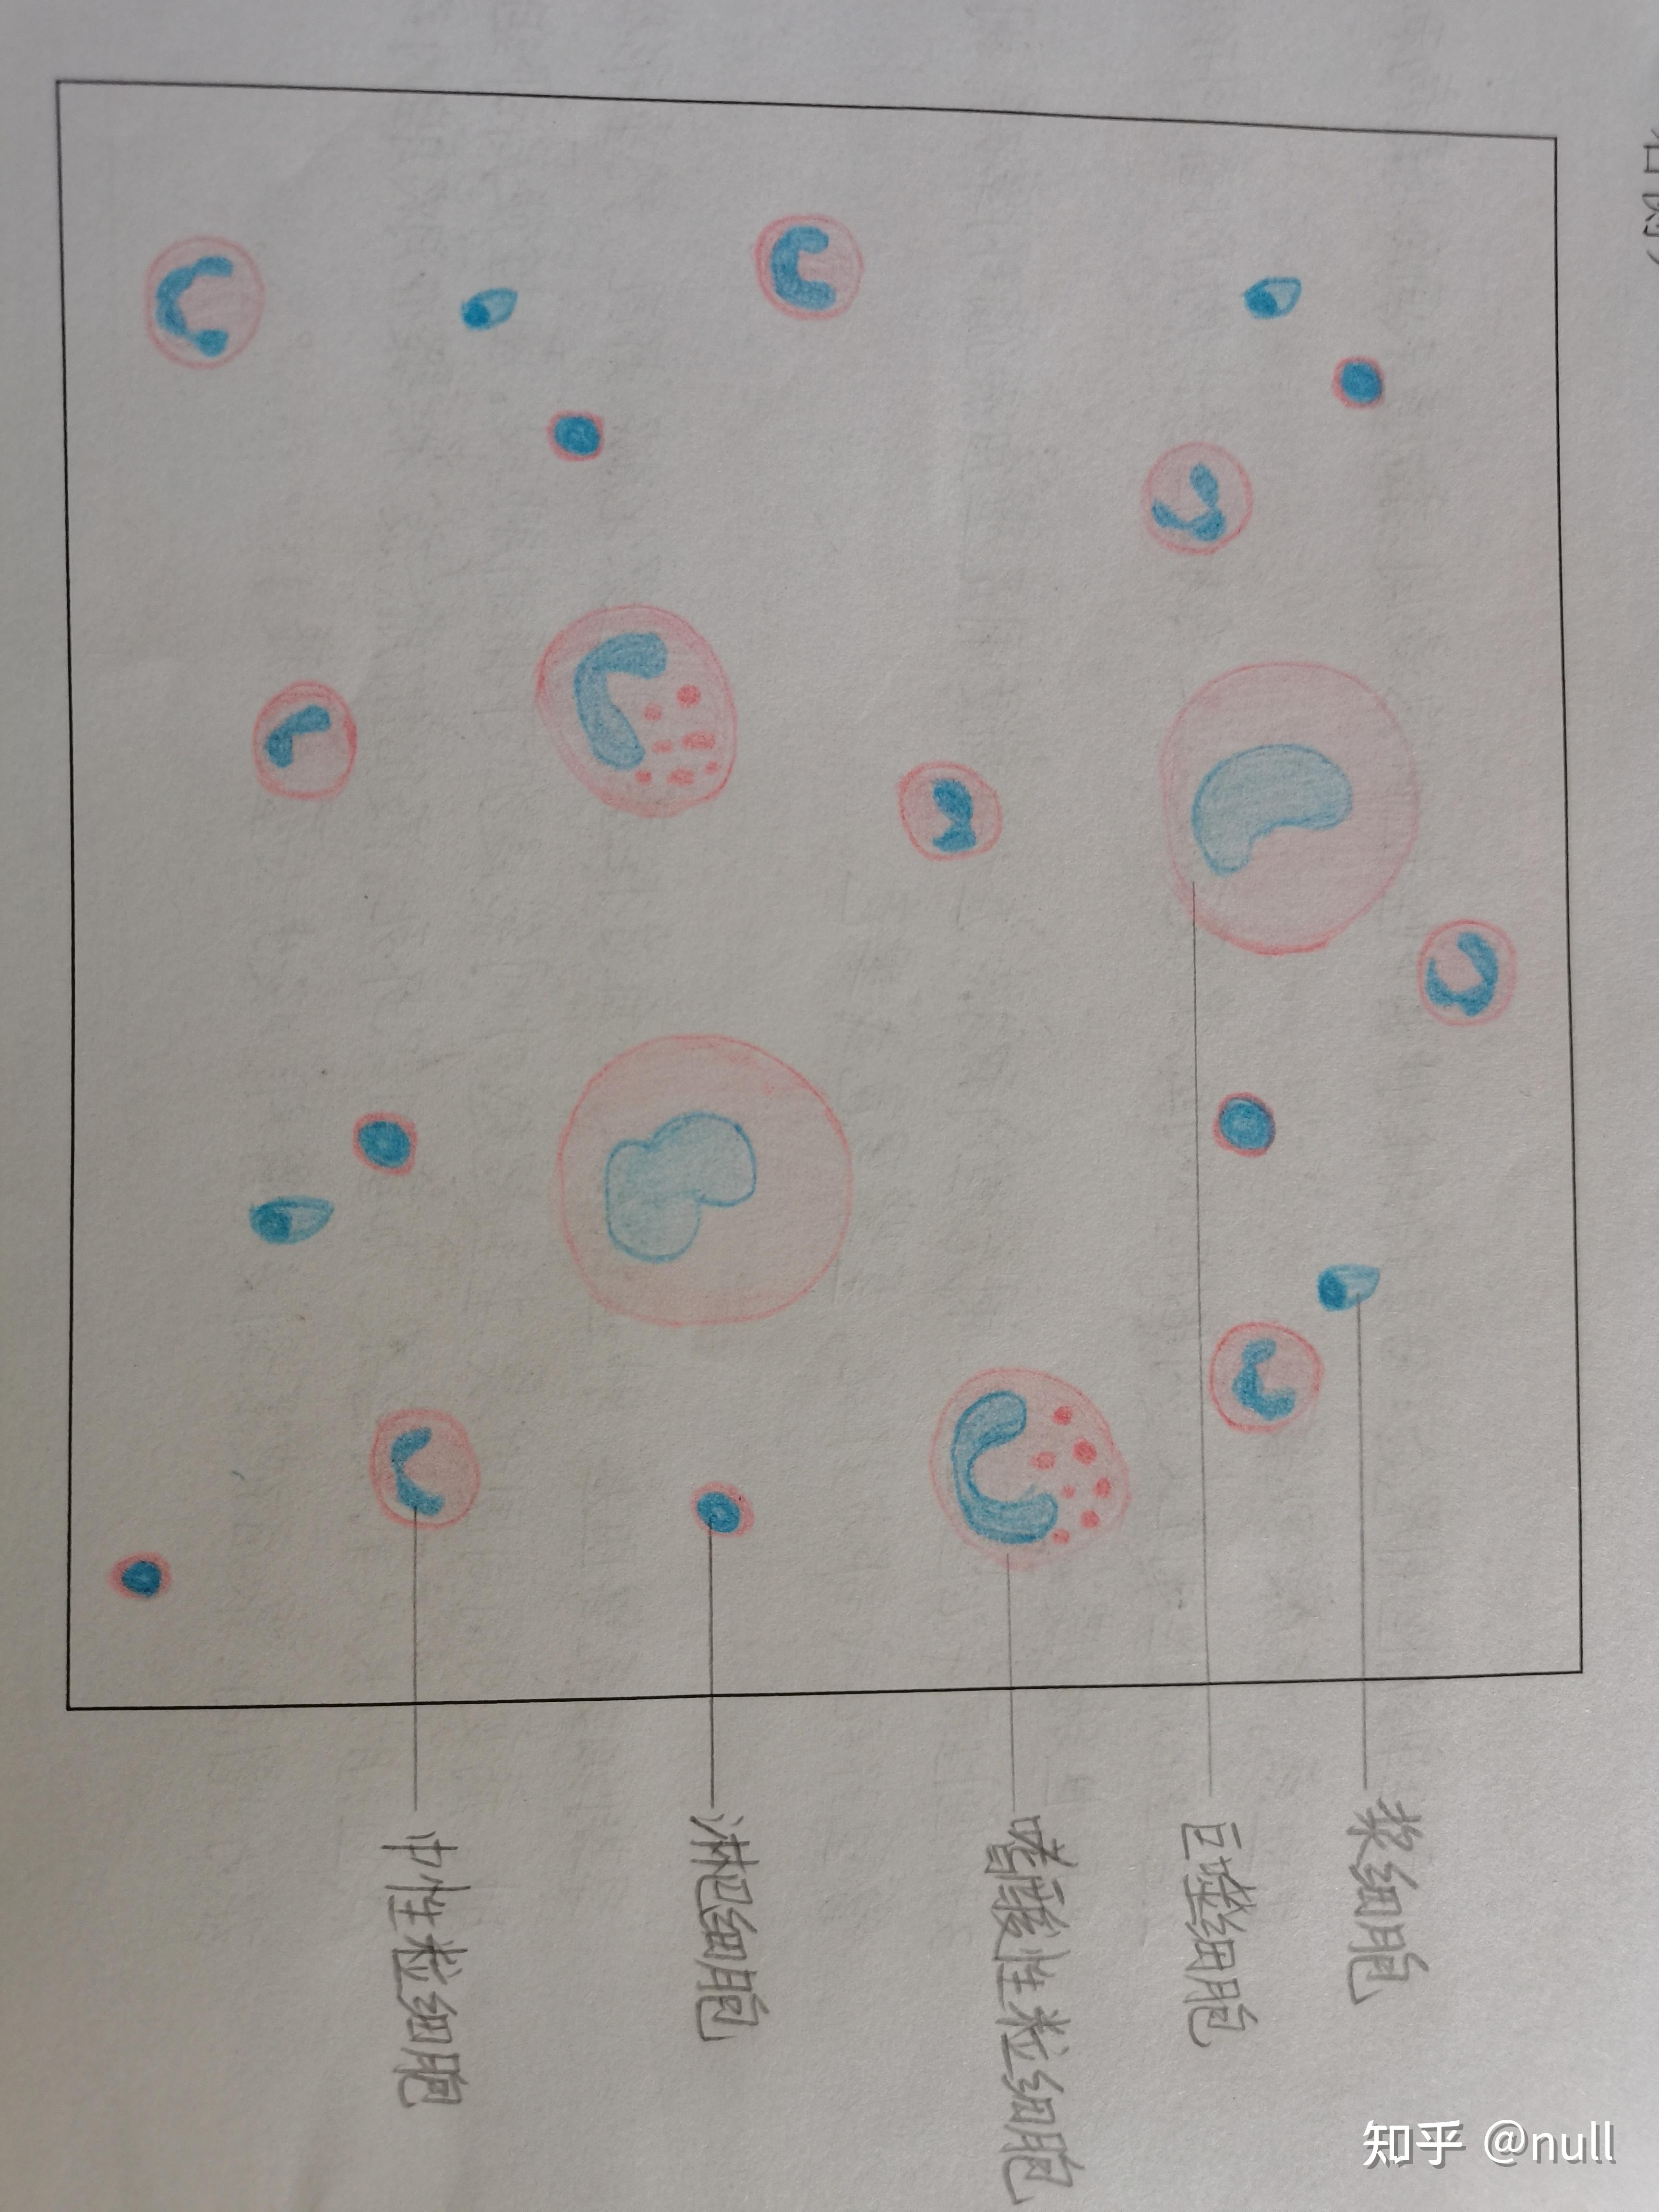 淋巴细胞转化试验绘图图片